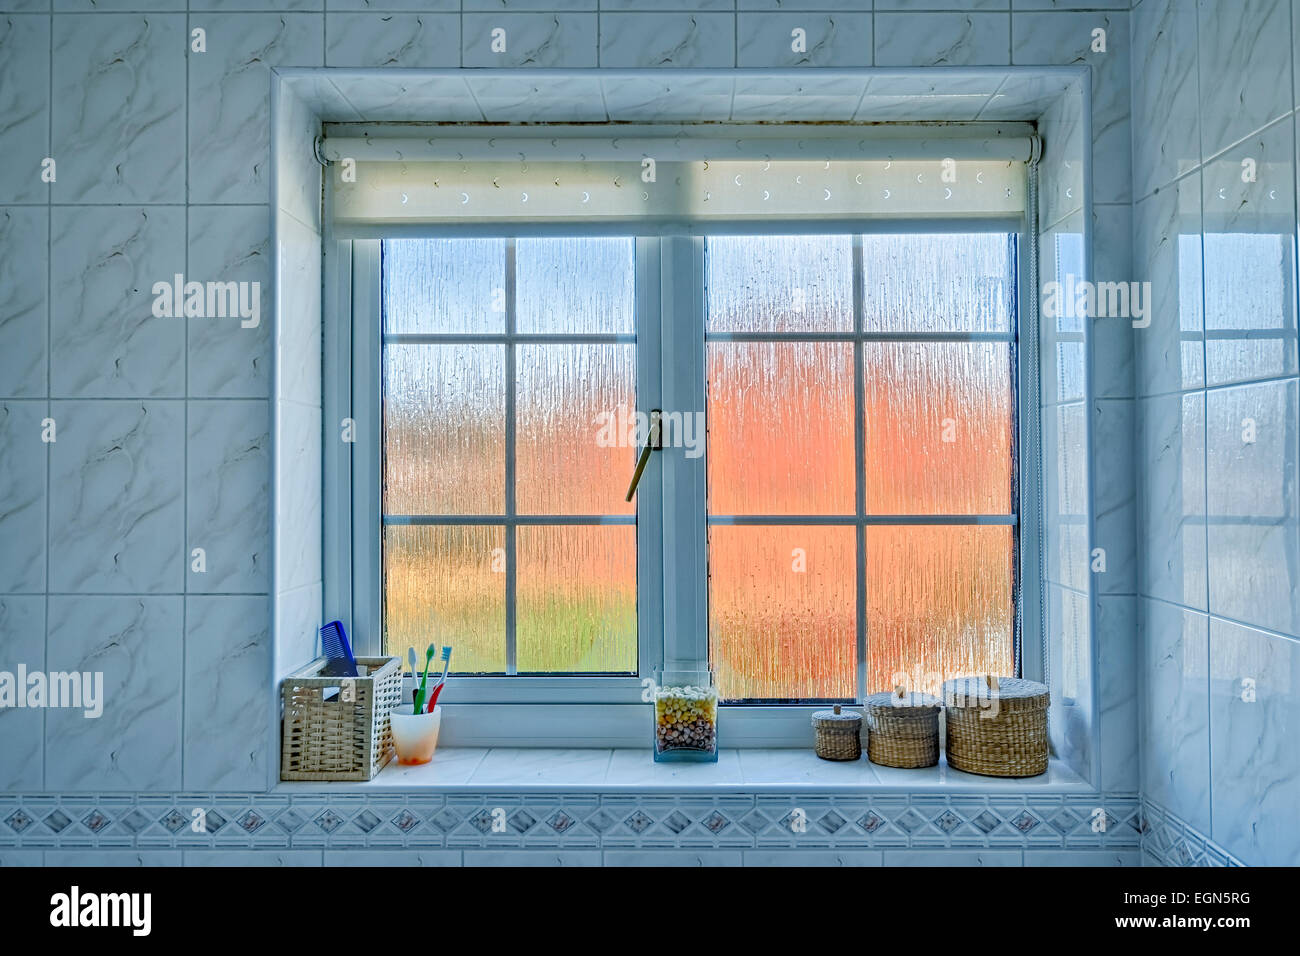 Salle de bains en verre dépoli avec distorsion de la fenêtre extérieure orange/bleu, et divers articles sur l'appui de la fenêtre. Banque D'Images